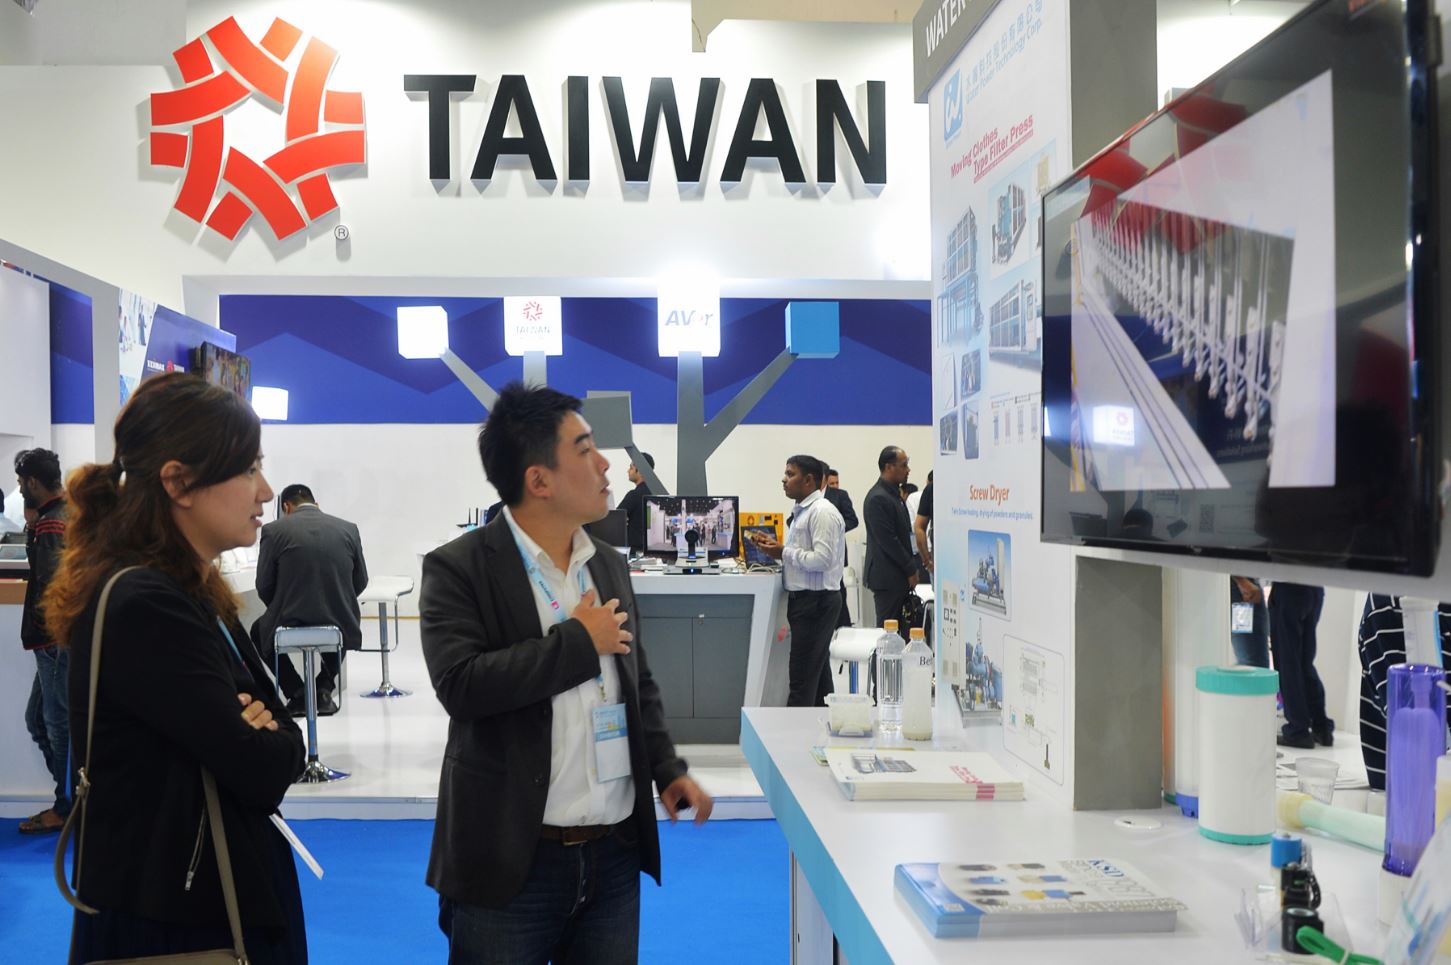 Hiệp định Thương mại Tự do Ấn Độ-Đài Loan sẽ mang lại lợi ích cho khu vực Ấn Độ-Thái Bình Dương